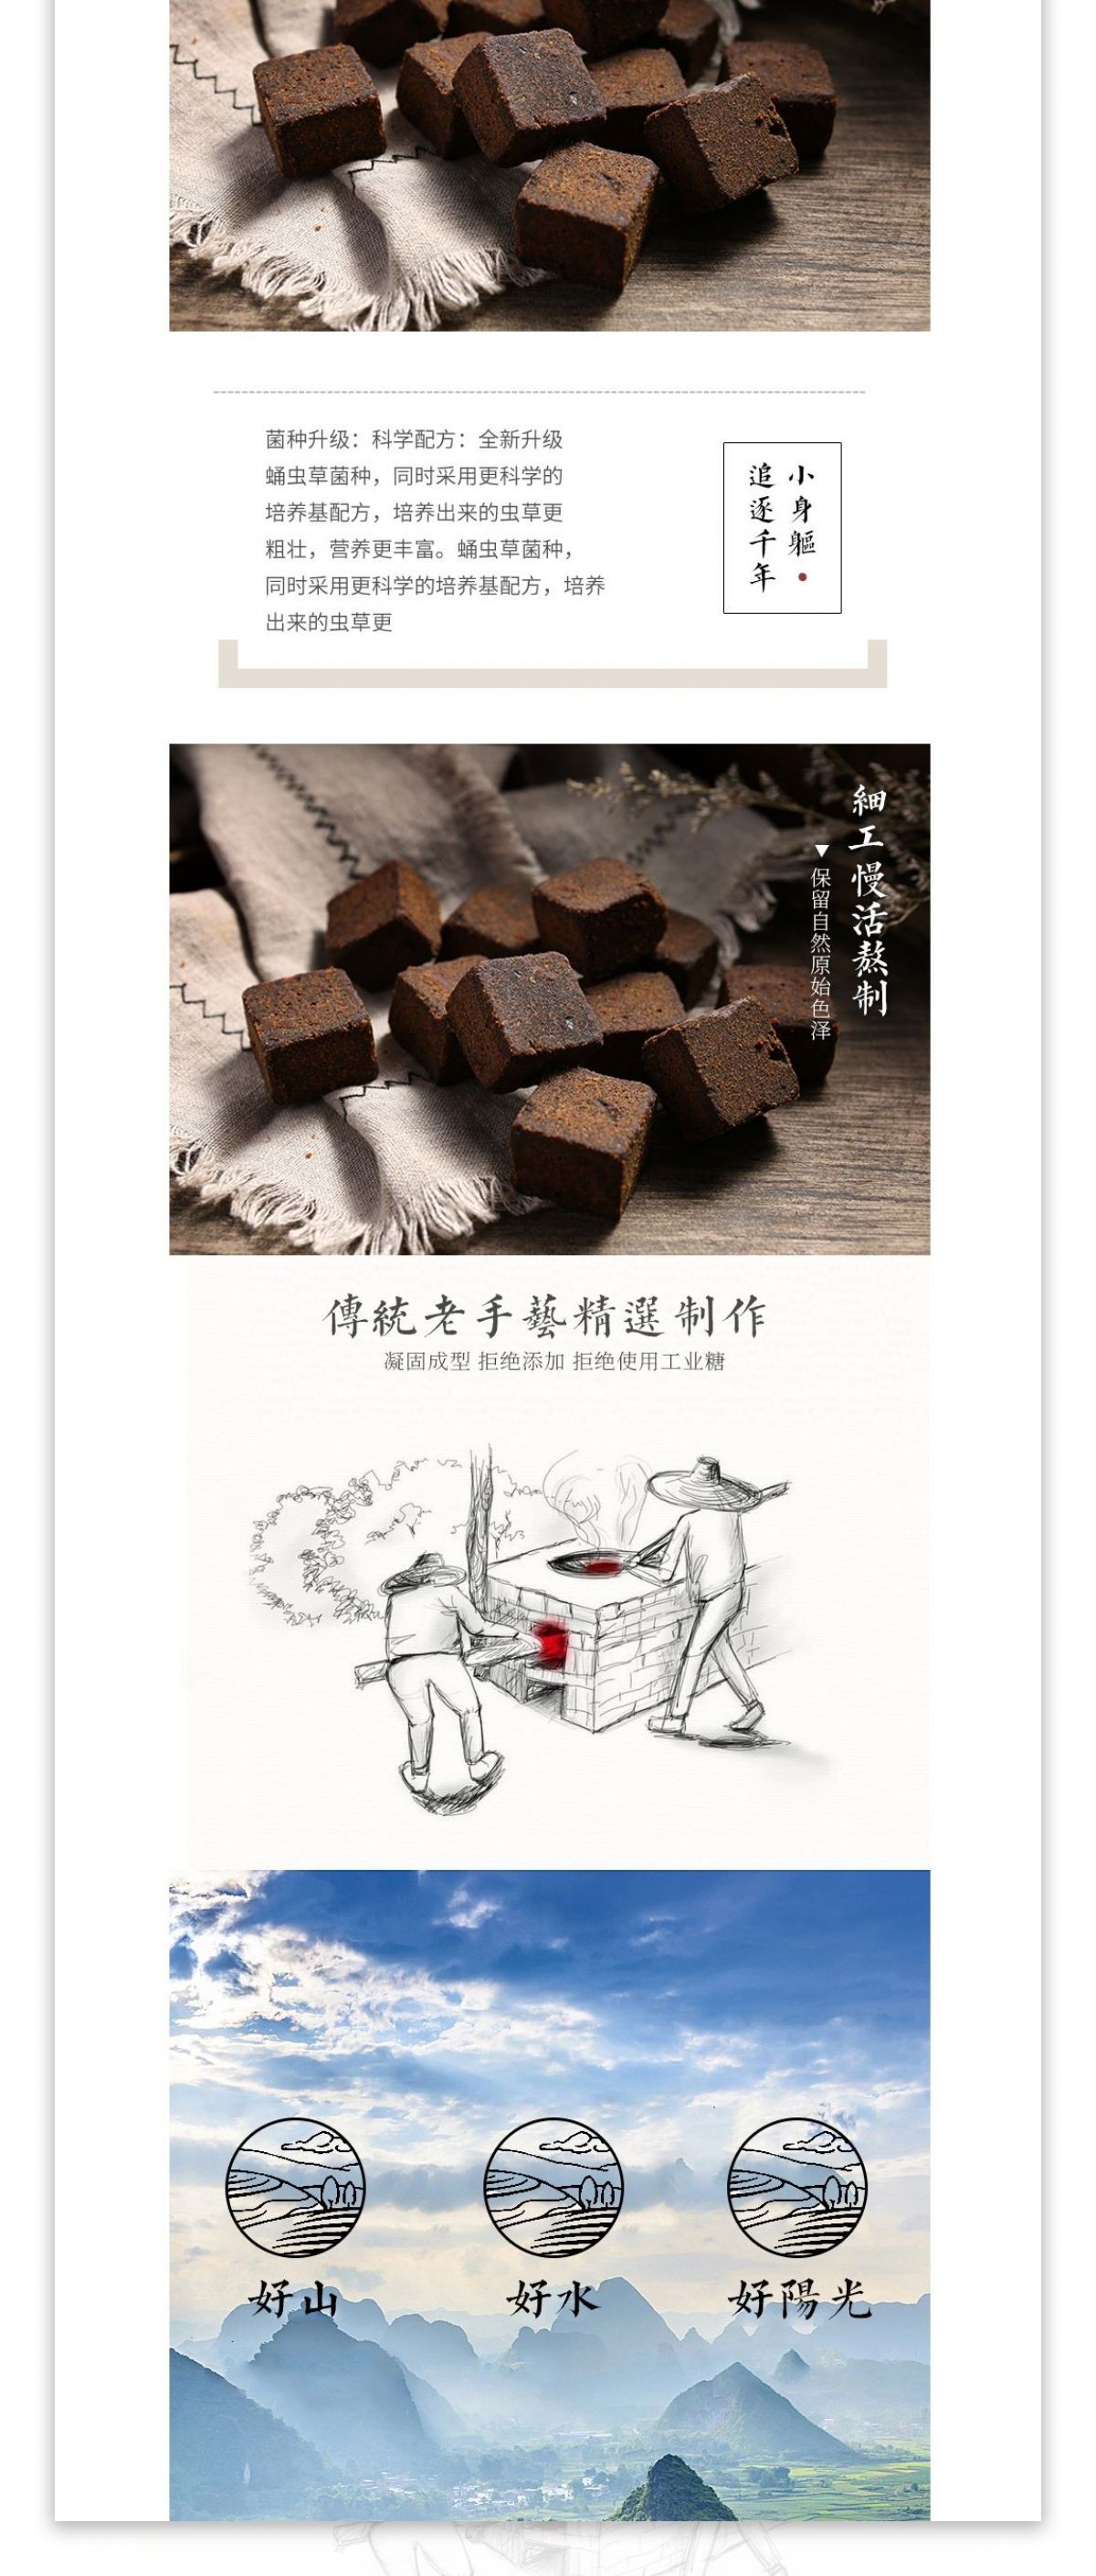 中国风滋补品食品红糖详情页模板